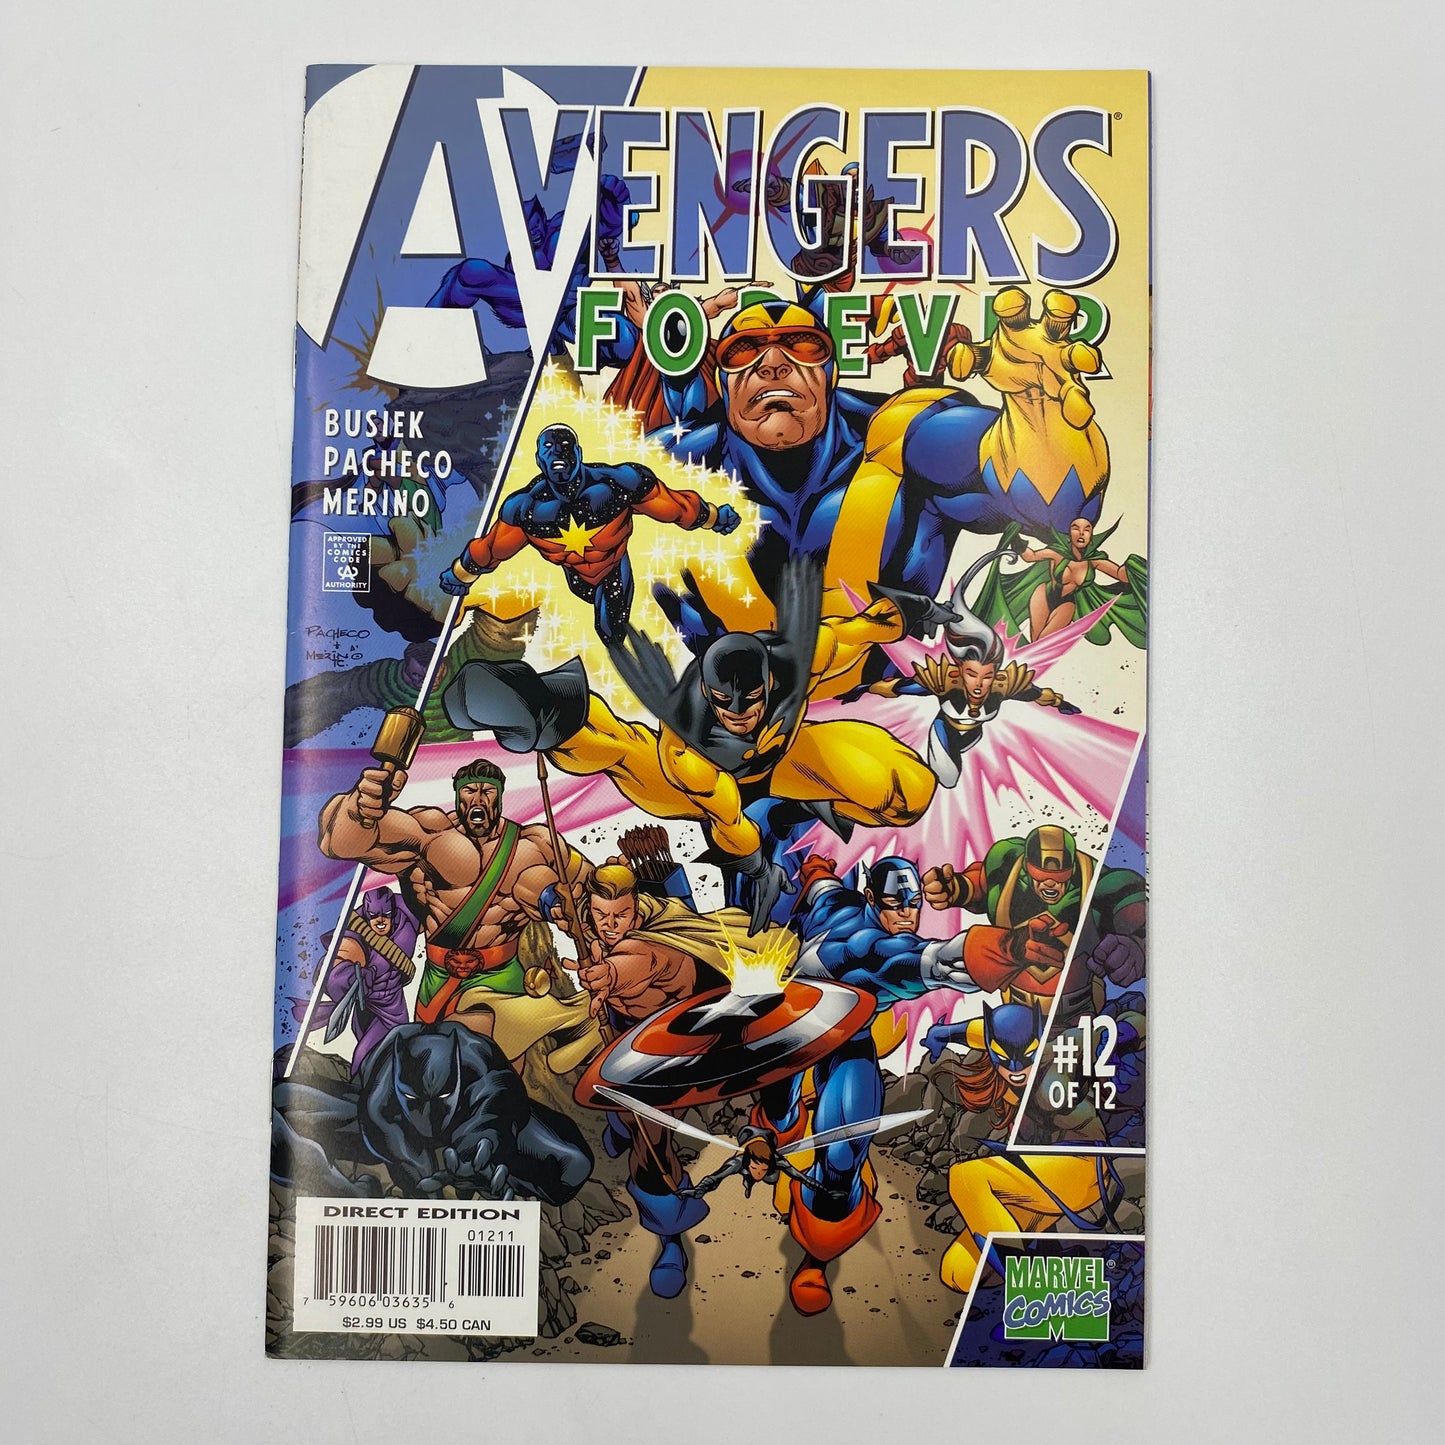 Avengers Forever #1-12 (1998-2000) Marvel